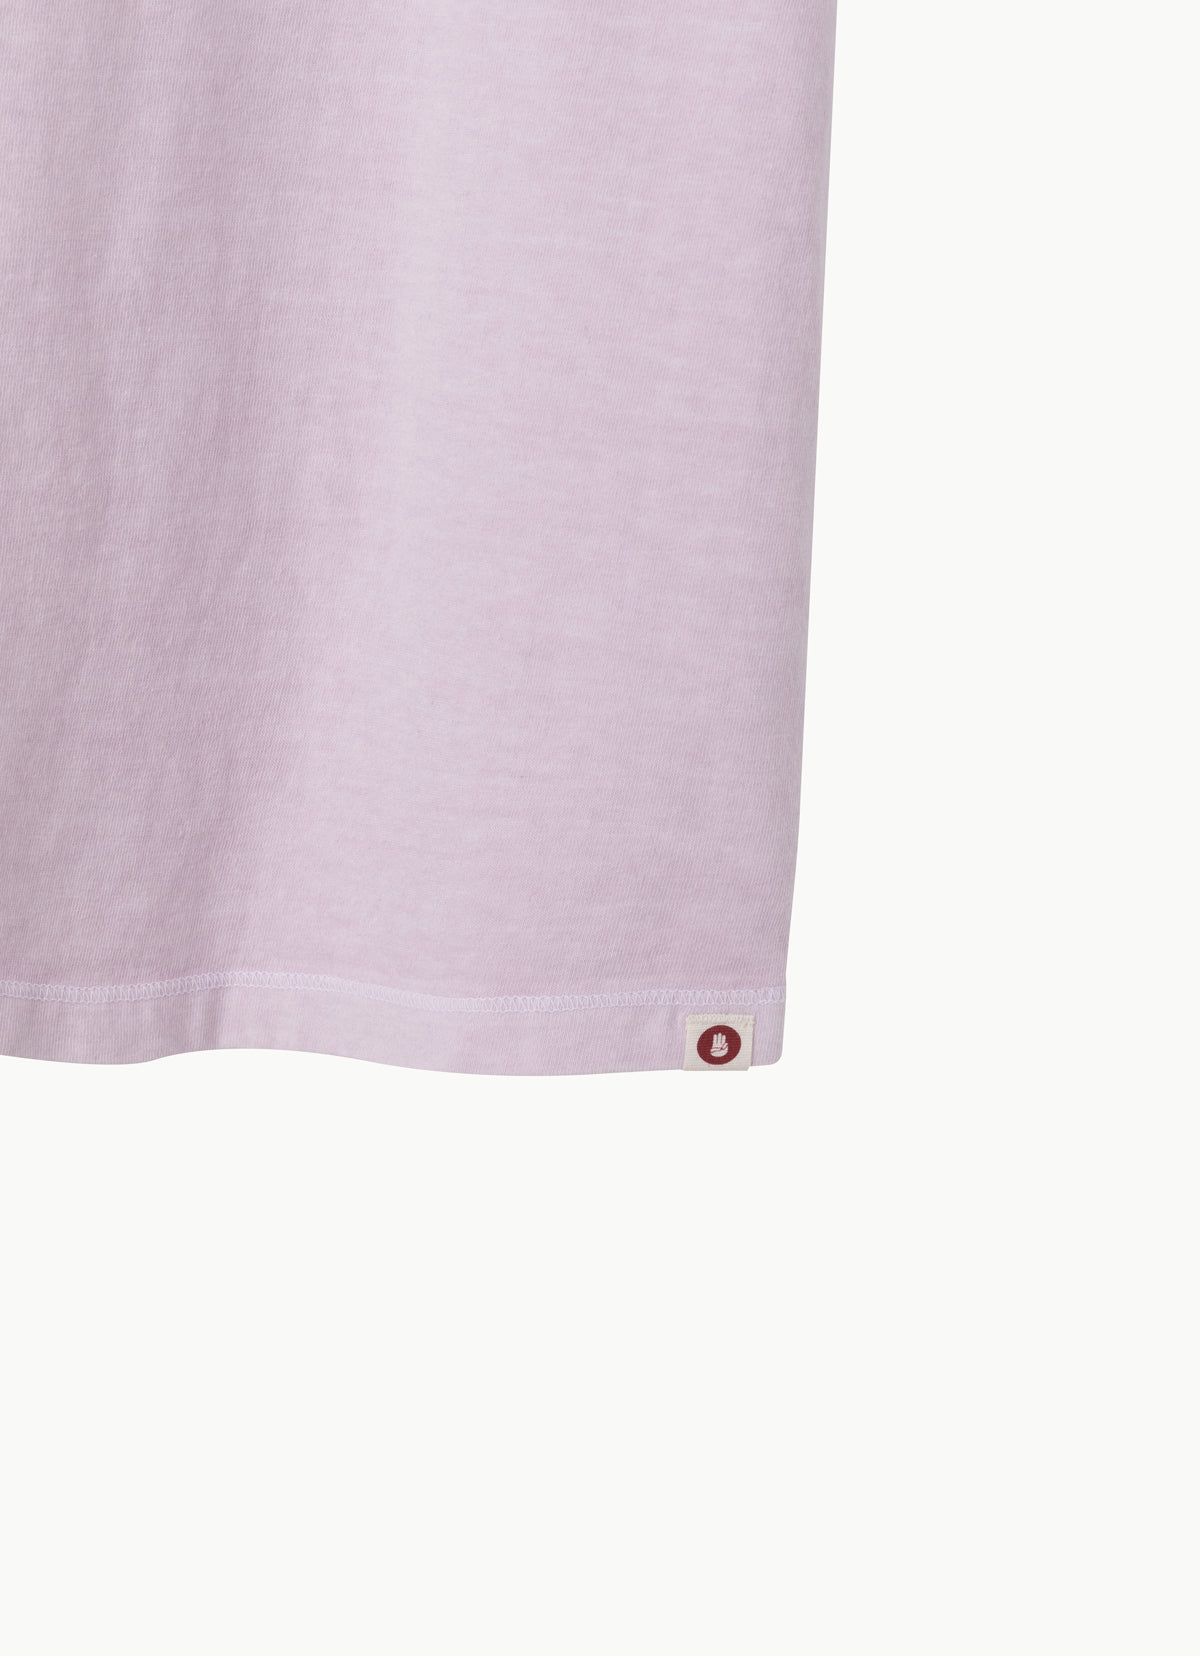 Kota short sleeve (Unisex)_Lavender